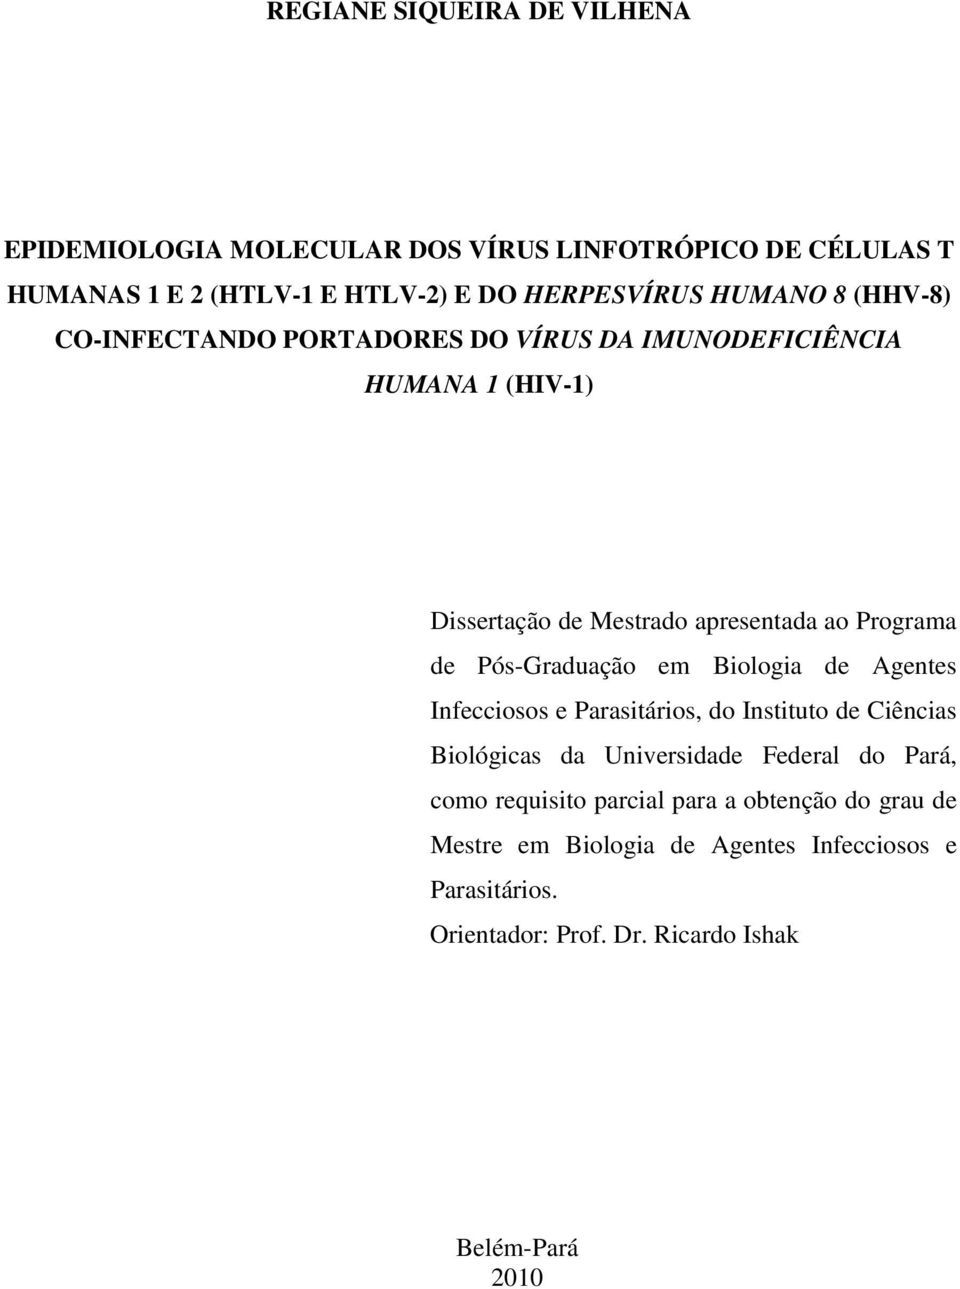 Pós-Graduação em Biologia de Agentes Infecciosos e Parasitários, do Instituto de Ciências Biológicas da Universidade Federal do Pará, como